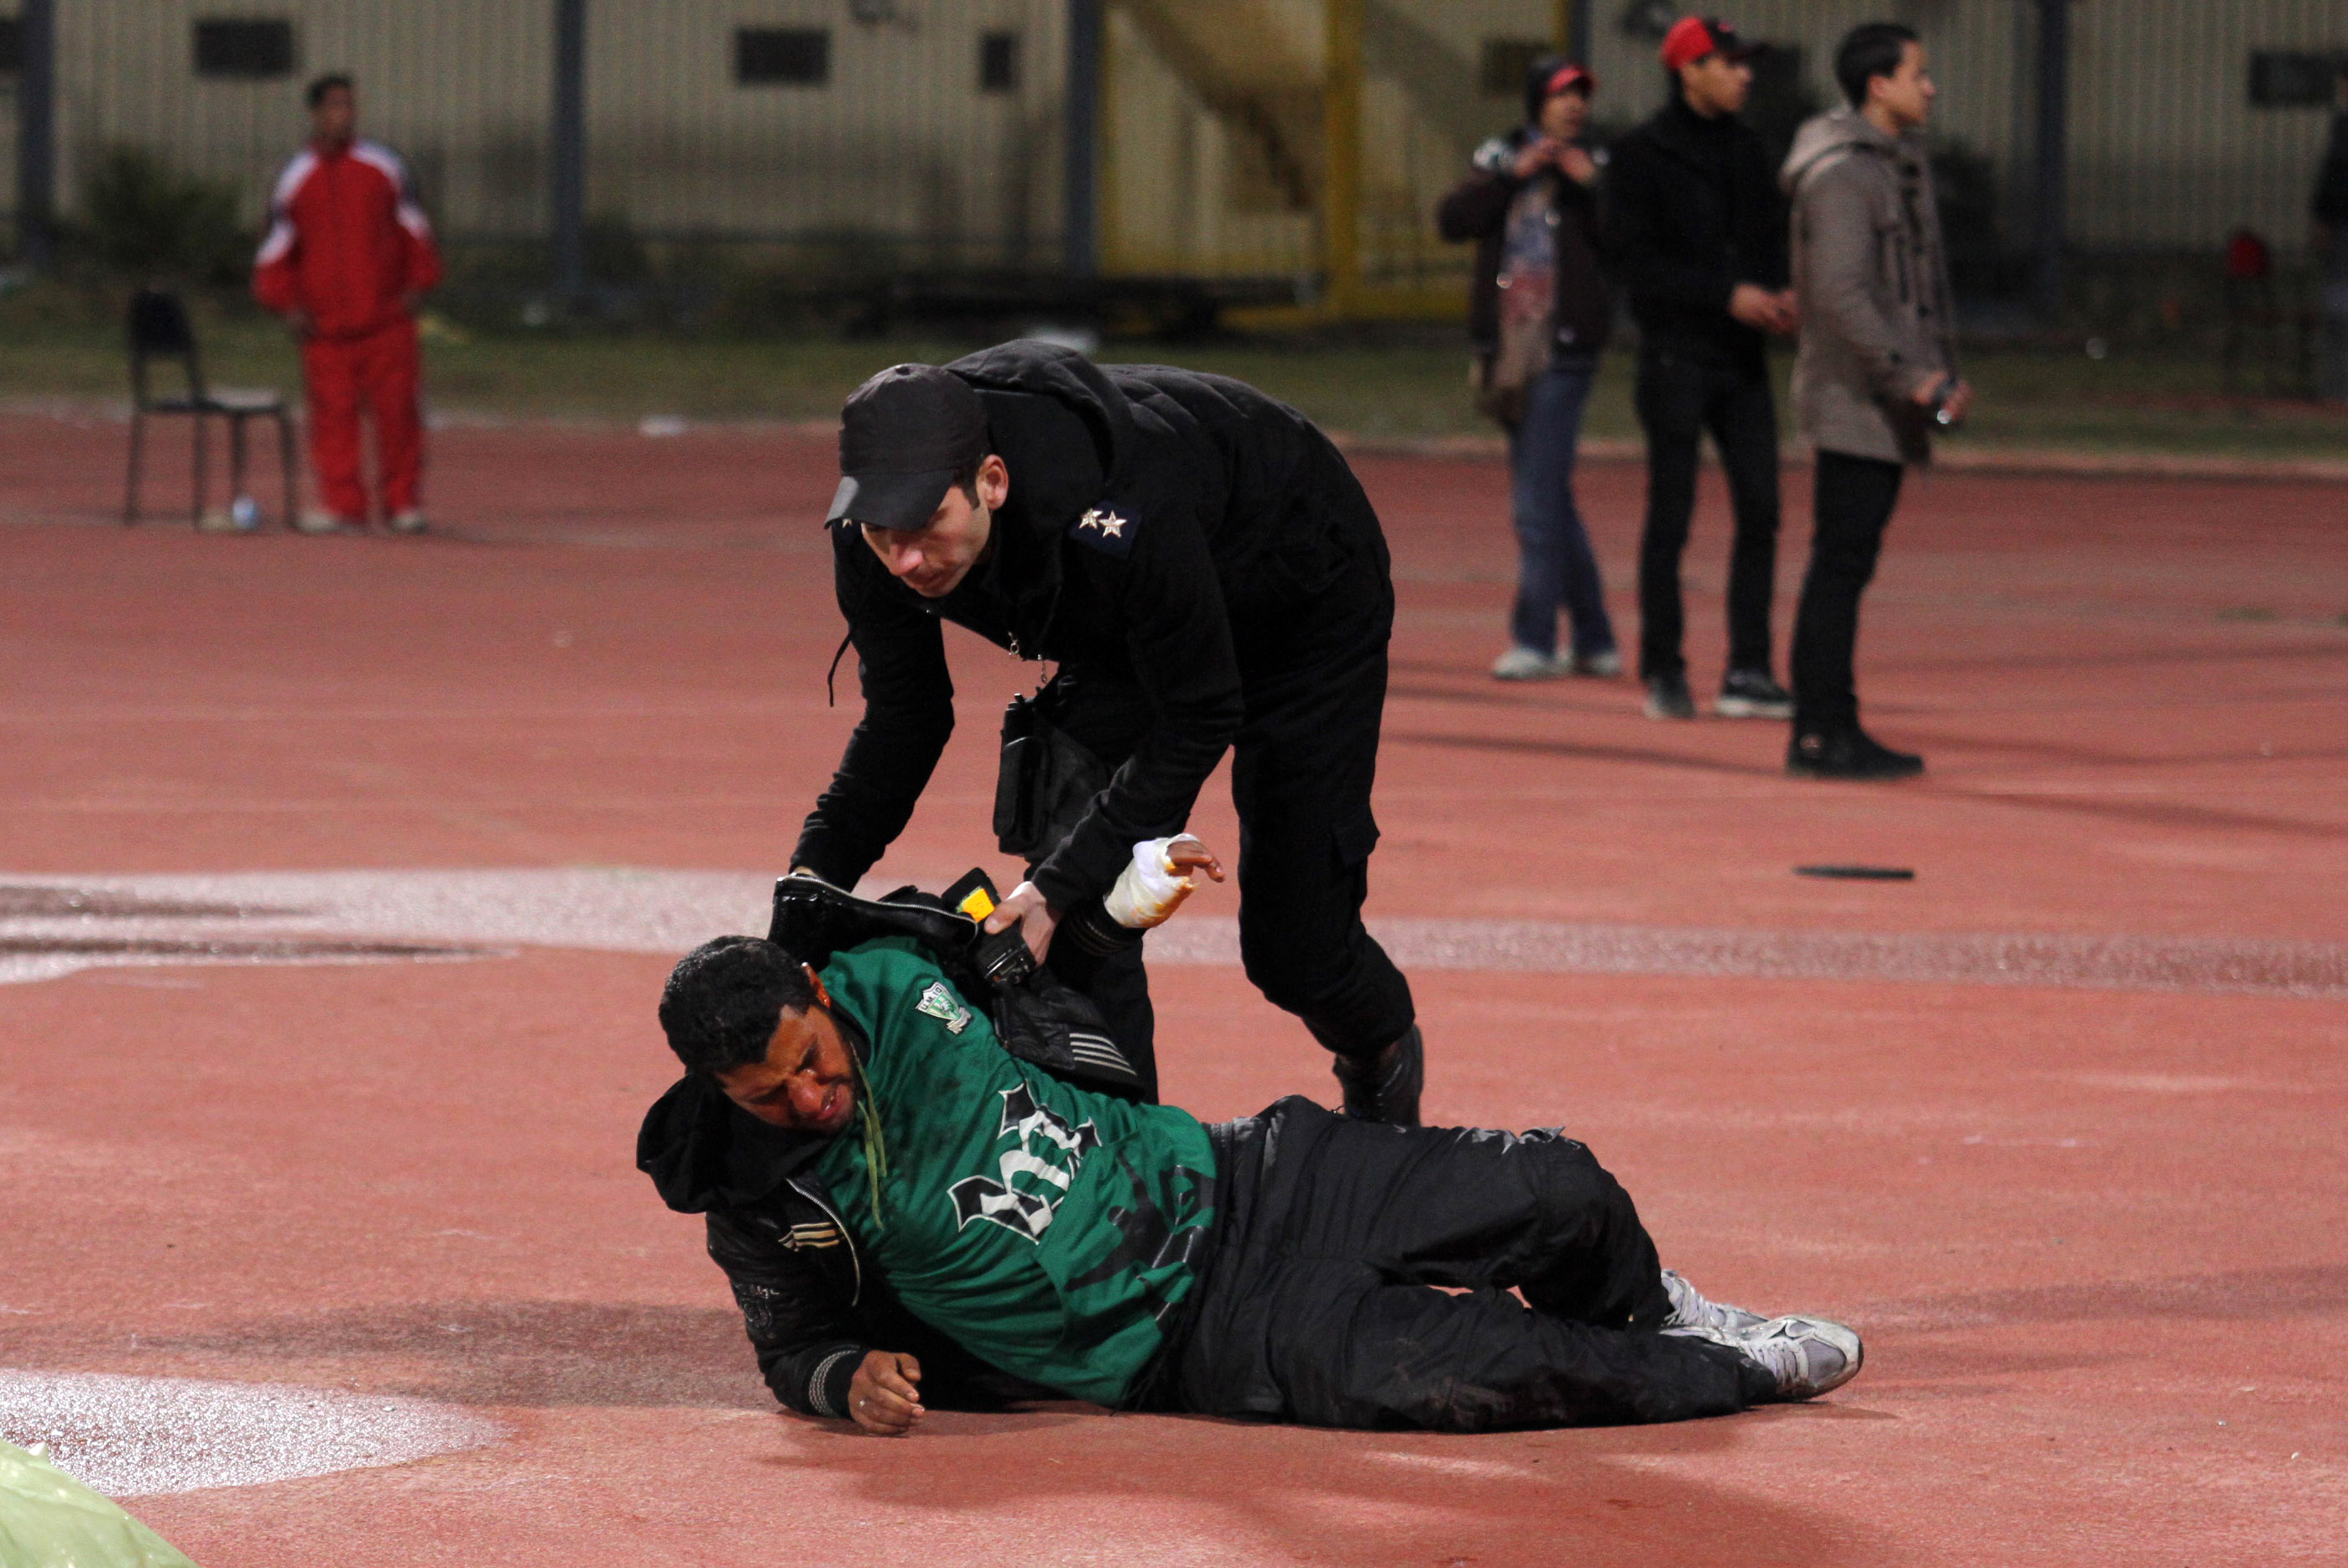 En polisman hjälper en skadad supporter.